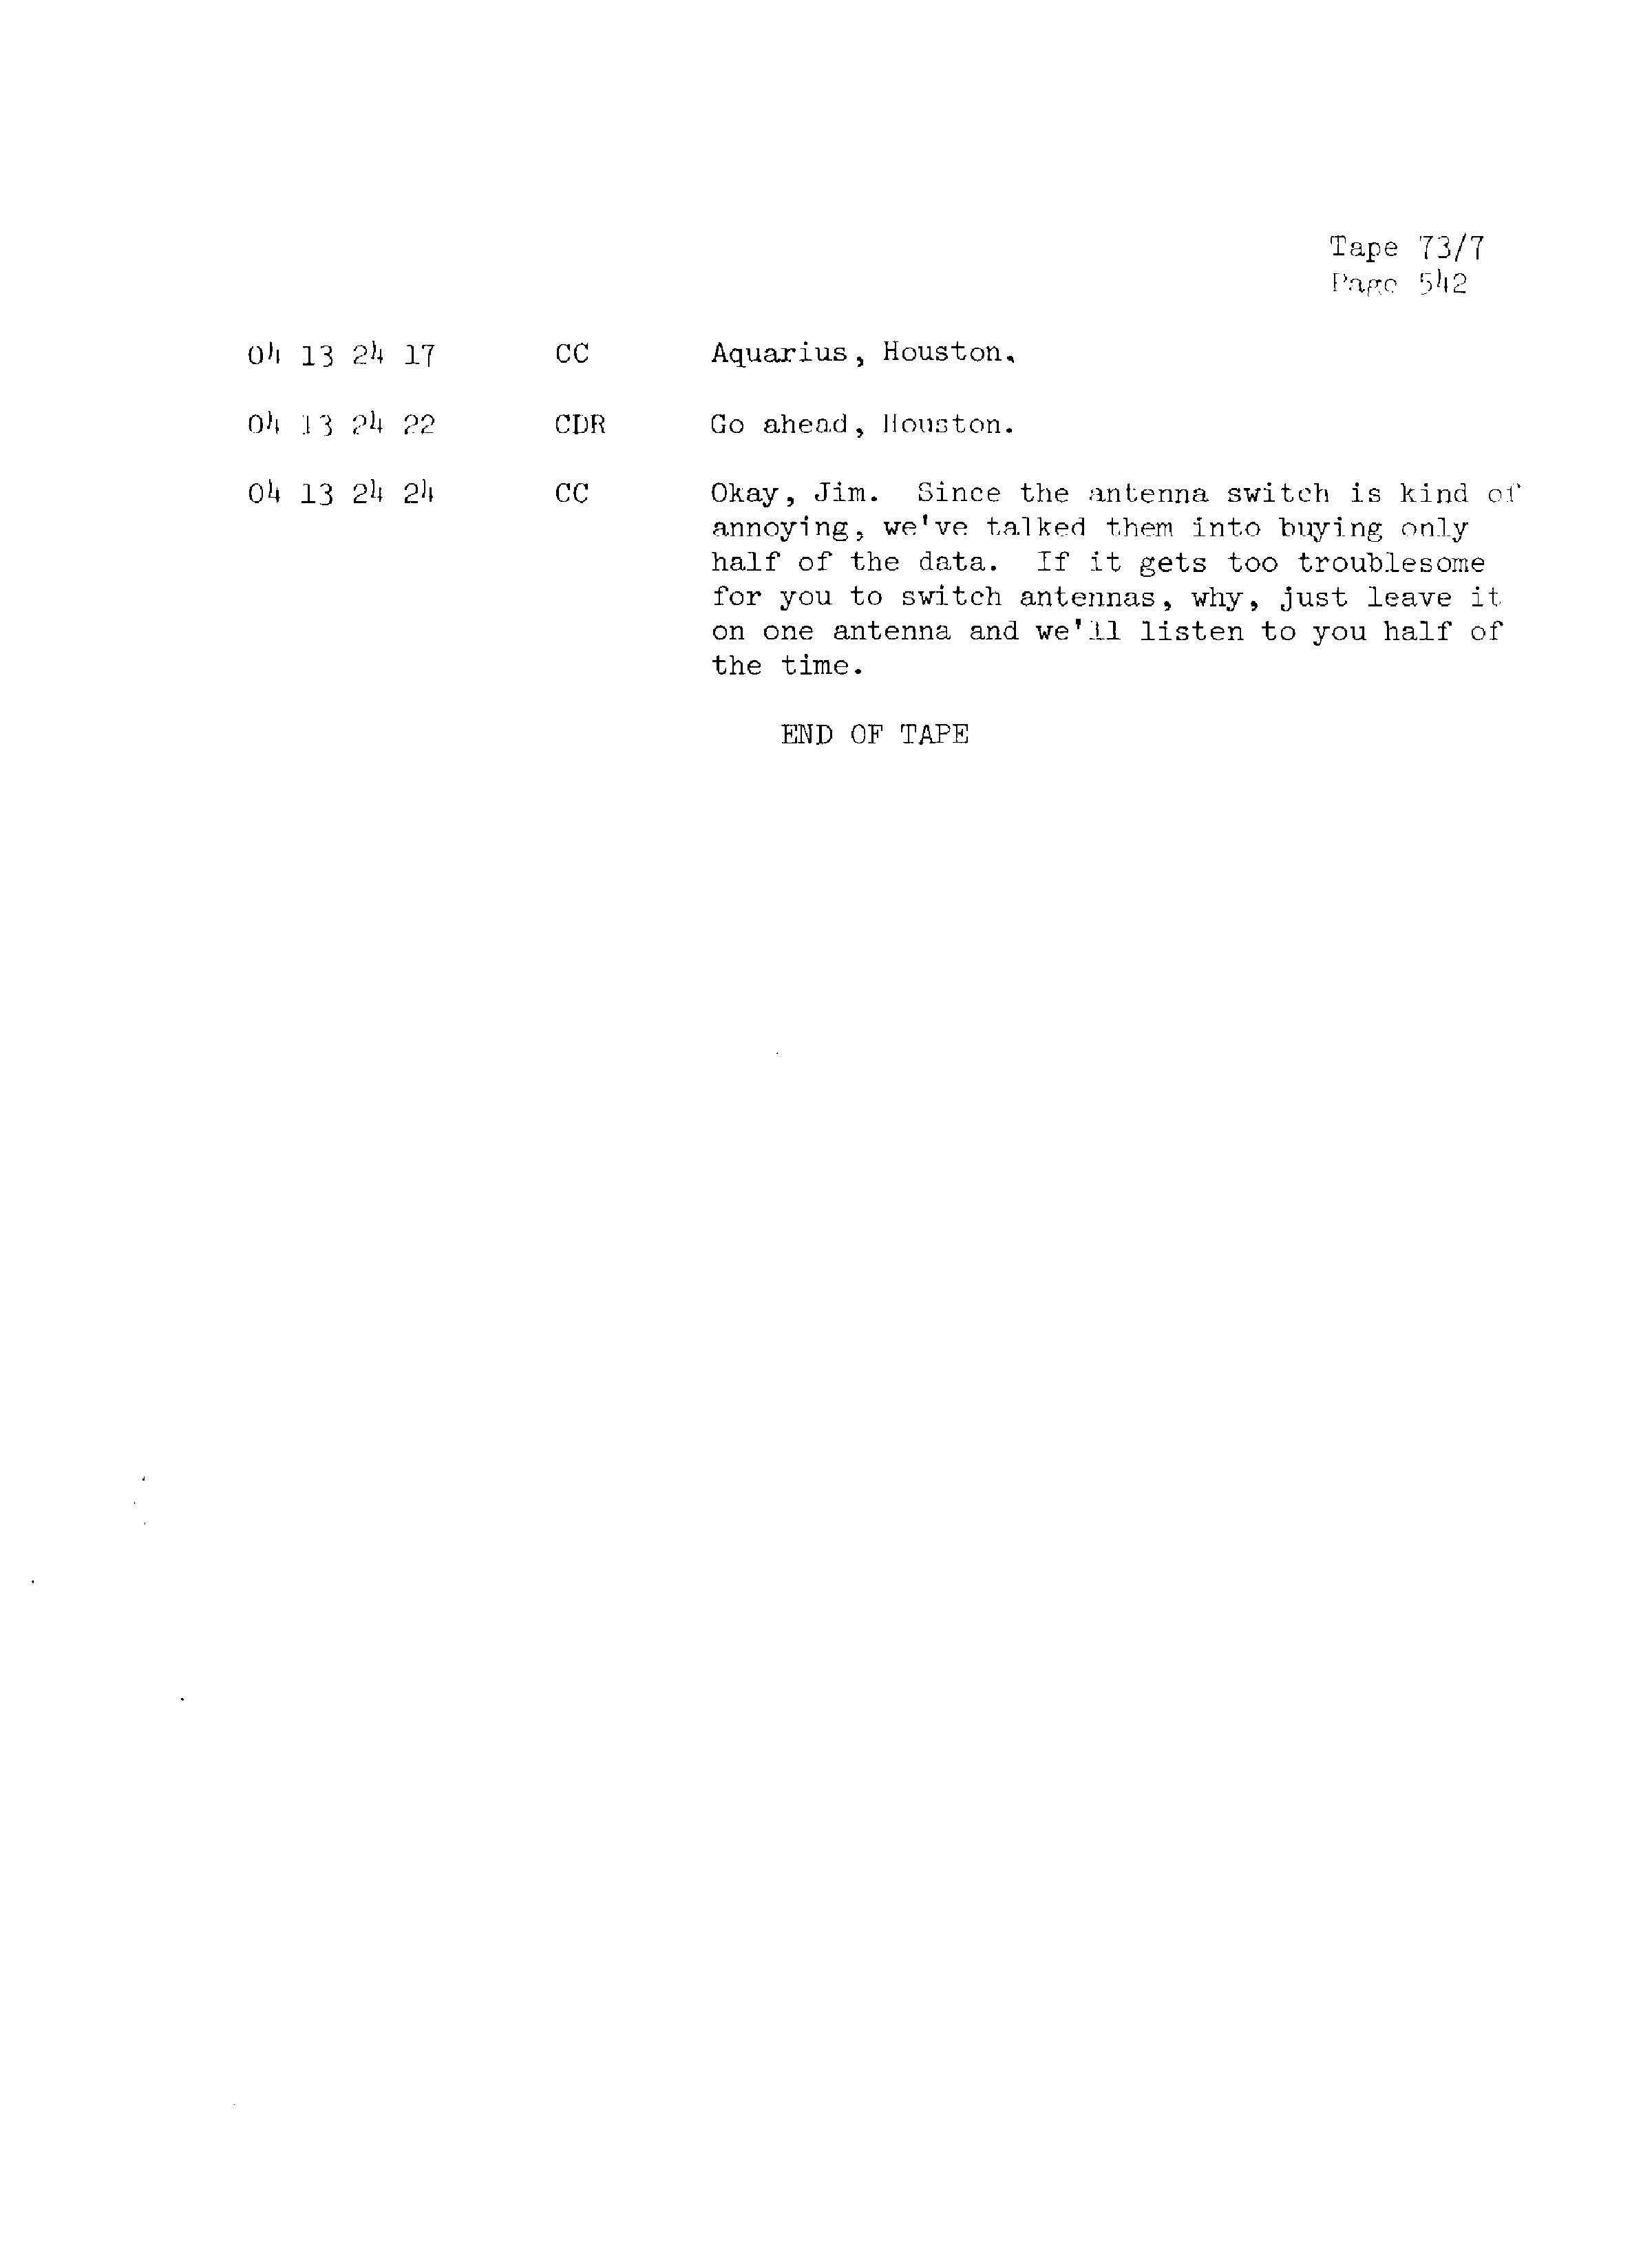 Page 549 of Apollo 13’s original transcript